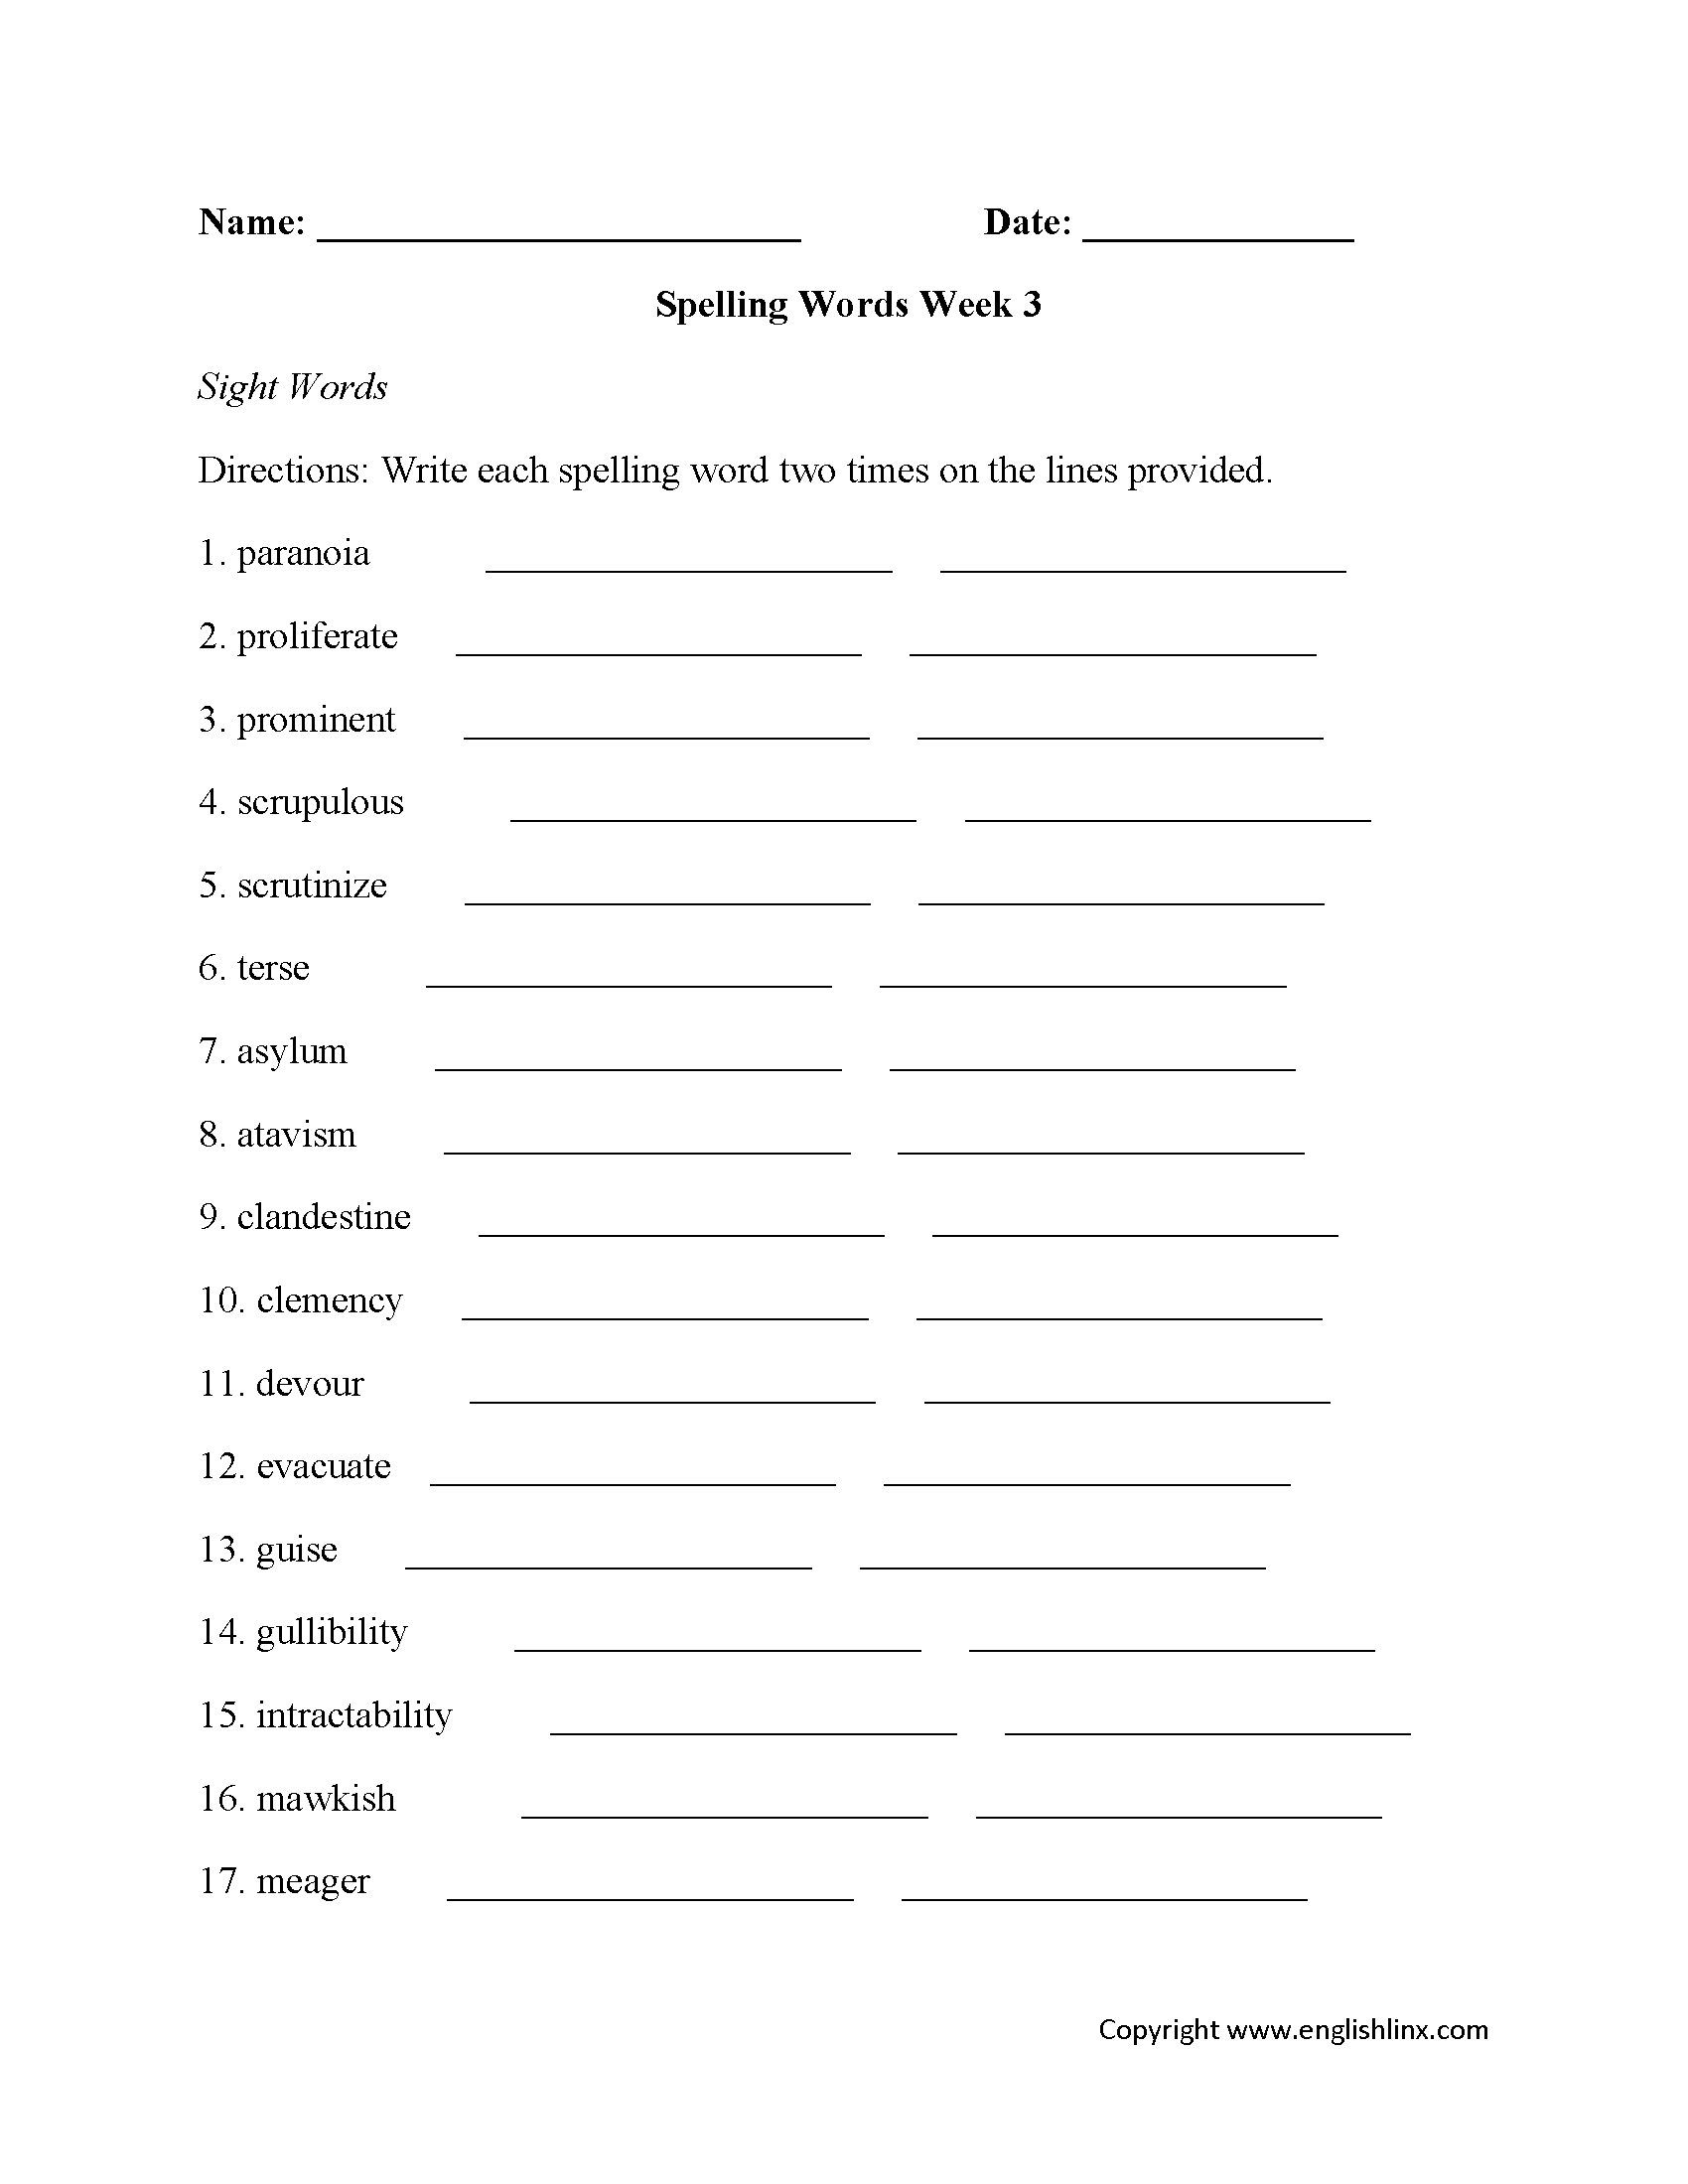 Spelling Worksheets | High School Spelling Worksheets